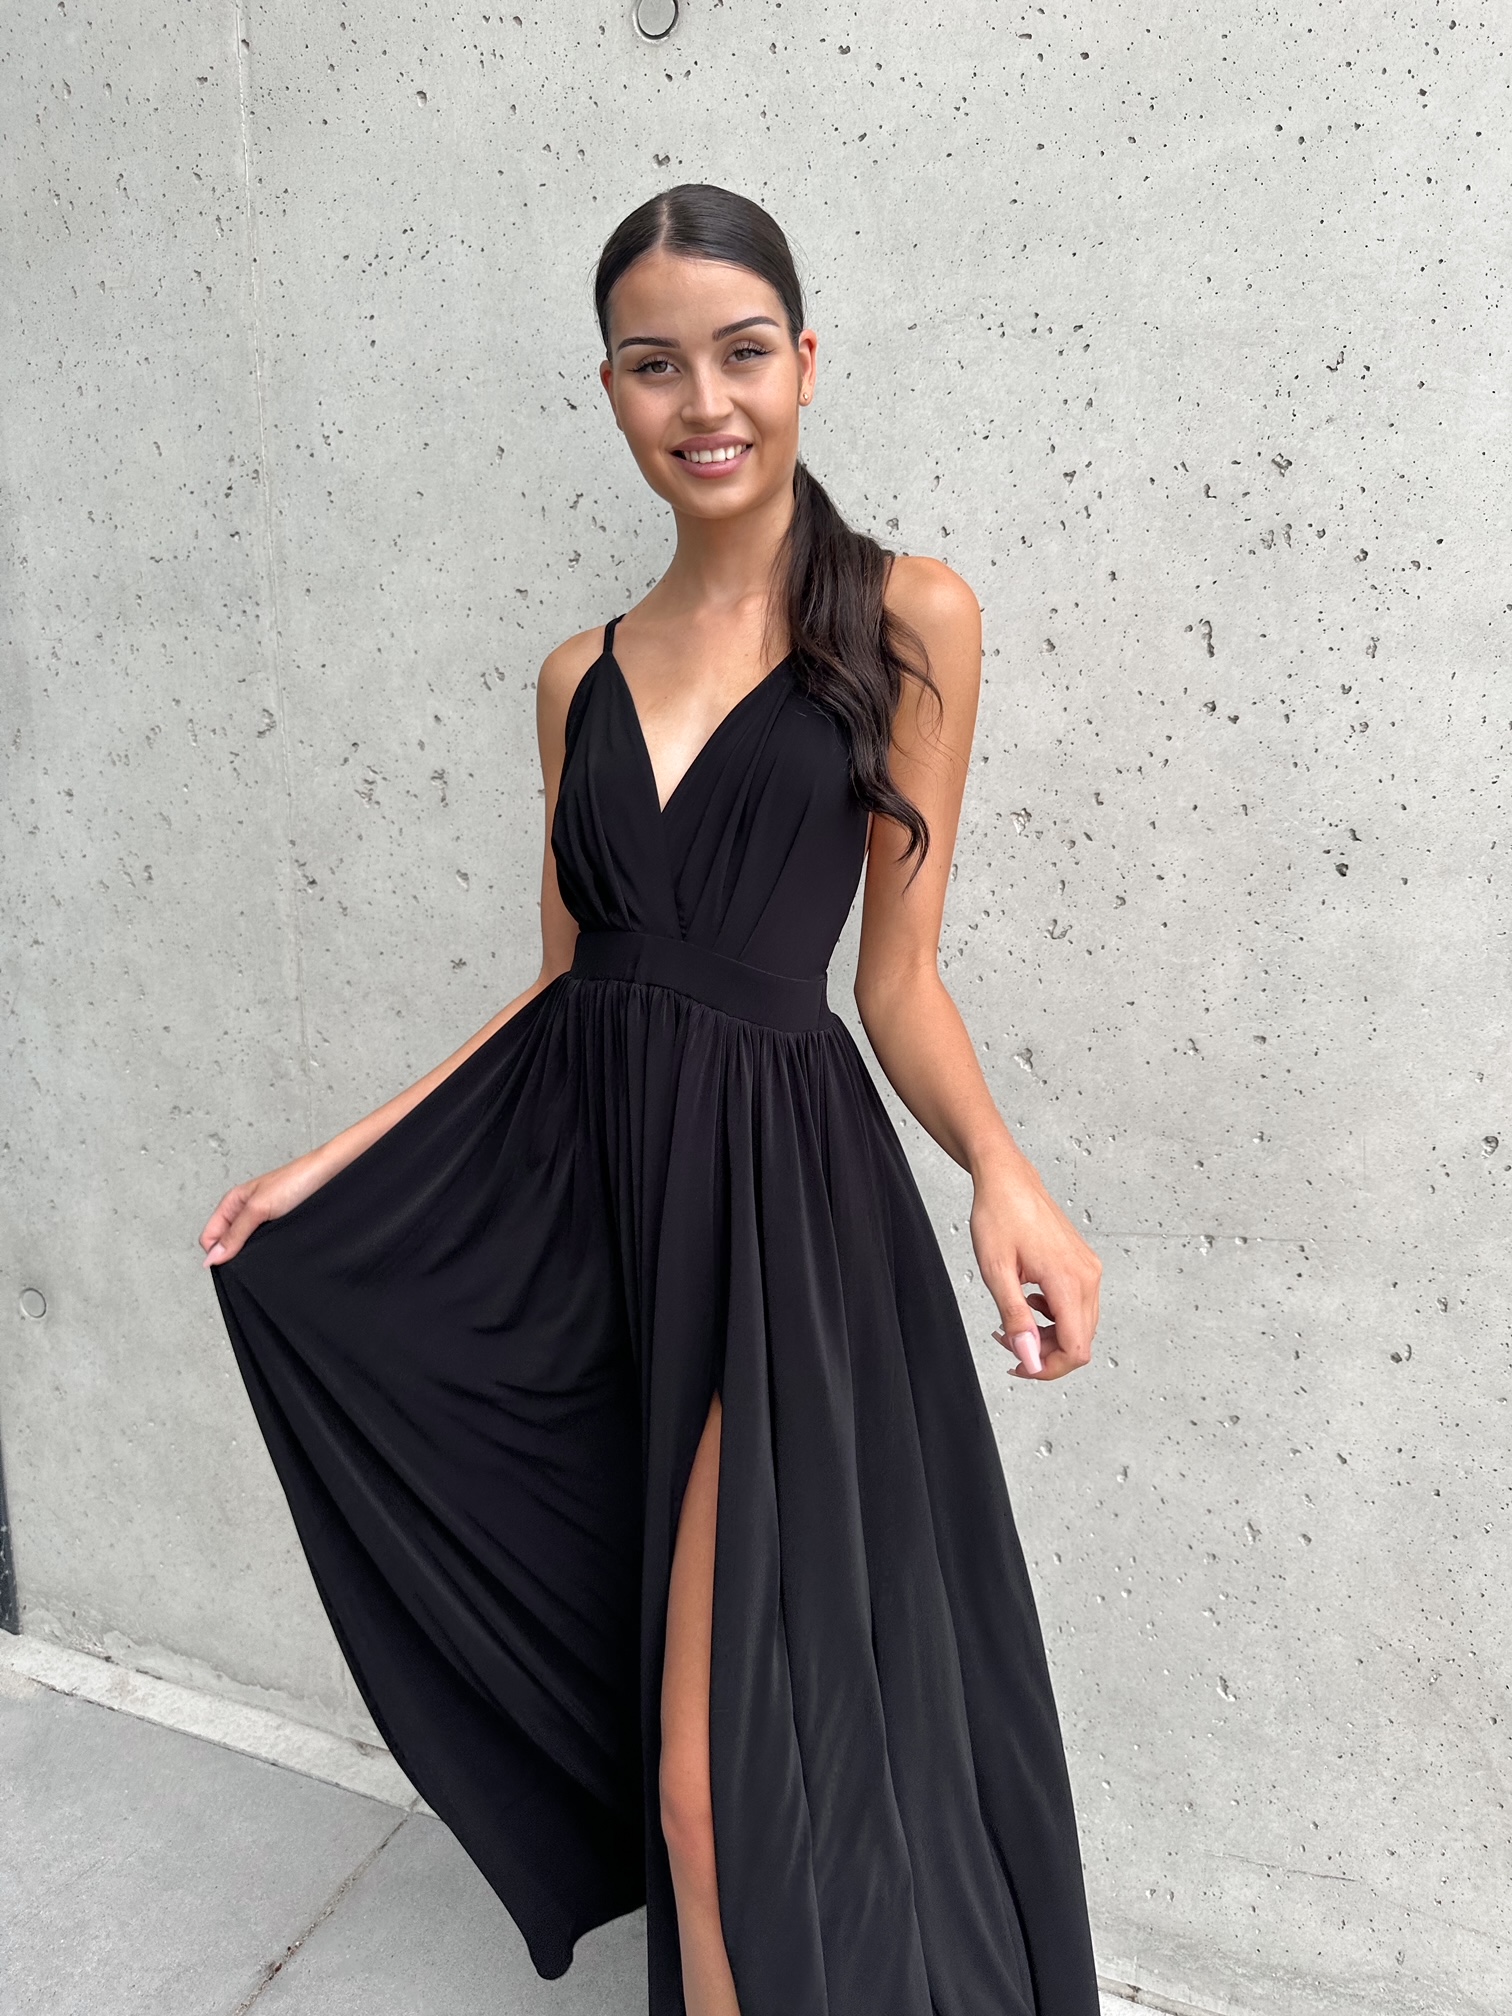 Šaty EMMA černé VELIKOST: UNI (XS - M)